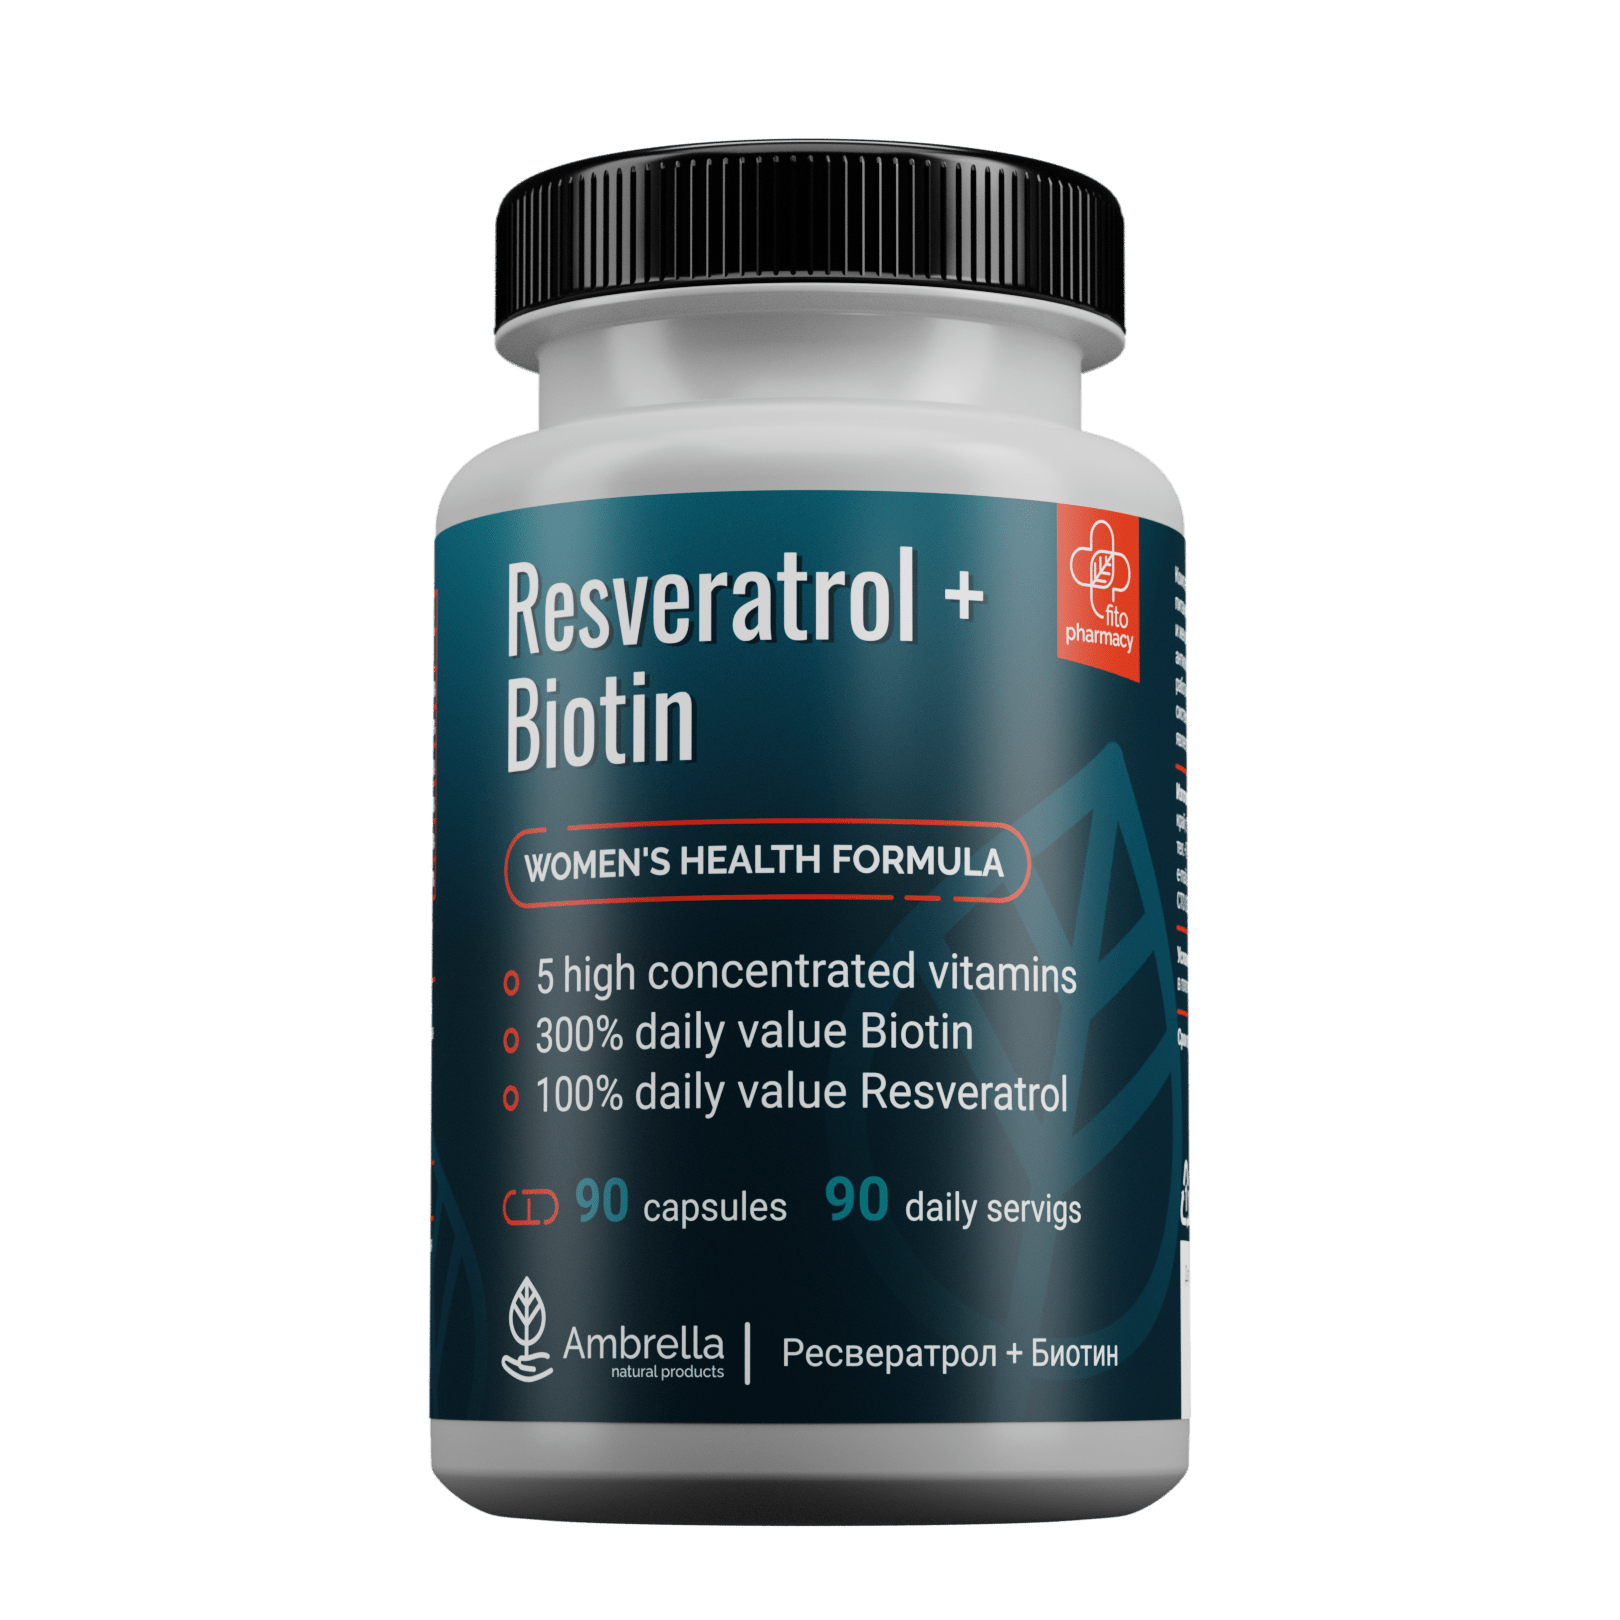 Resveratrol + Biotin “Комплекс для женского гормонального фона”, раст.капс.  90шт. по 0,5г — Интернет магазин Натуральные продукты Алтая